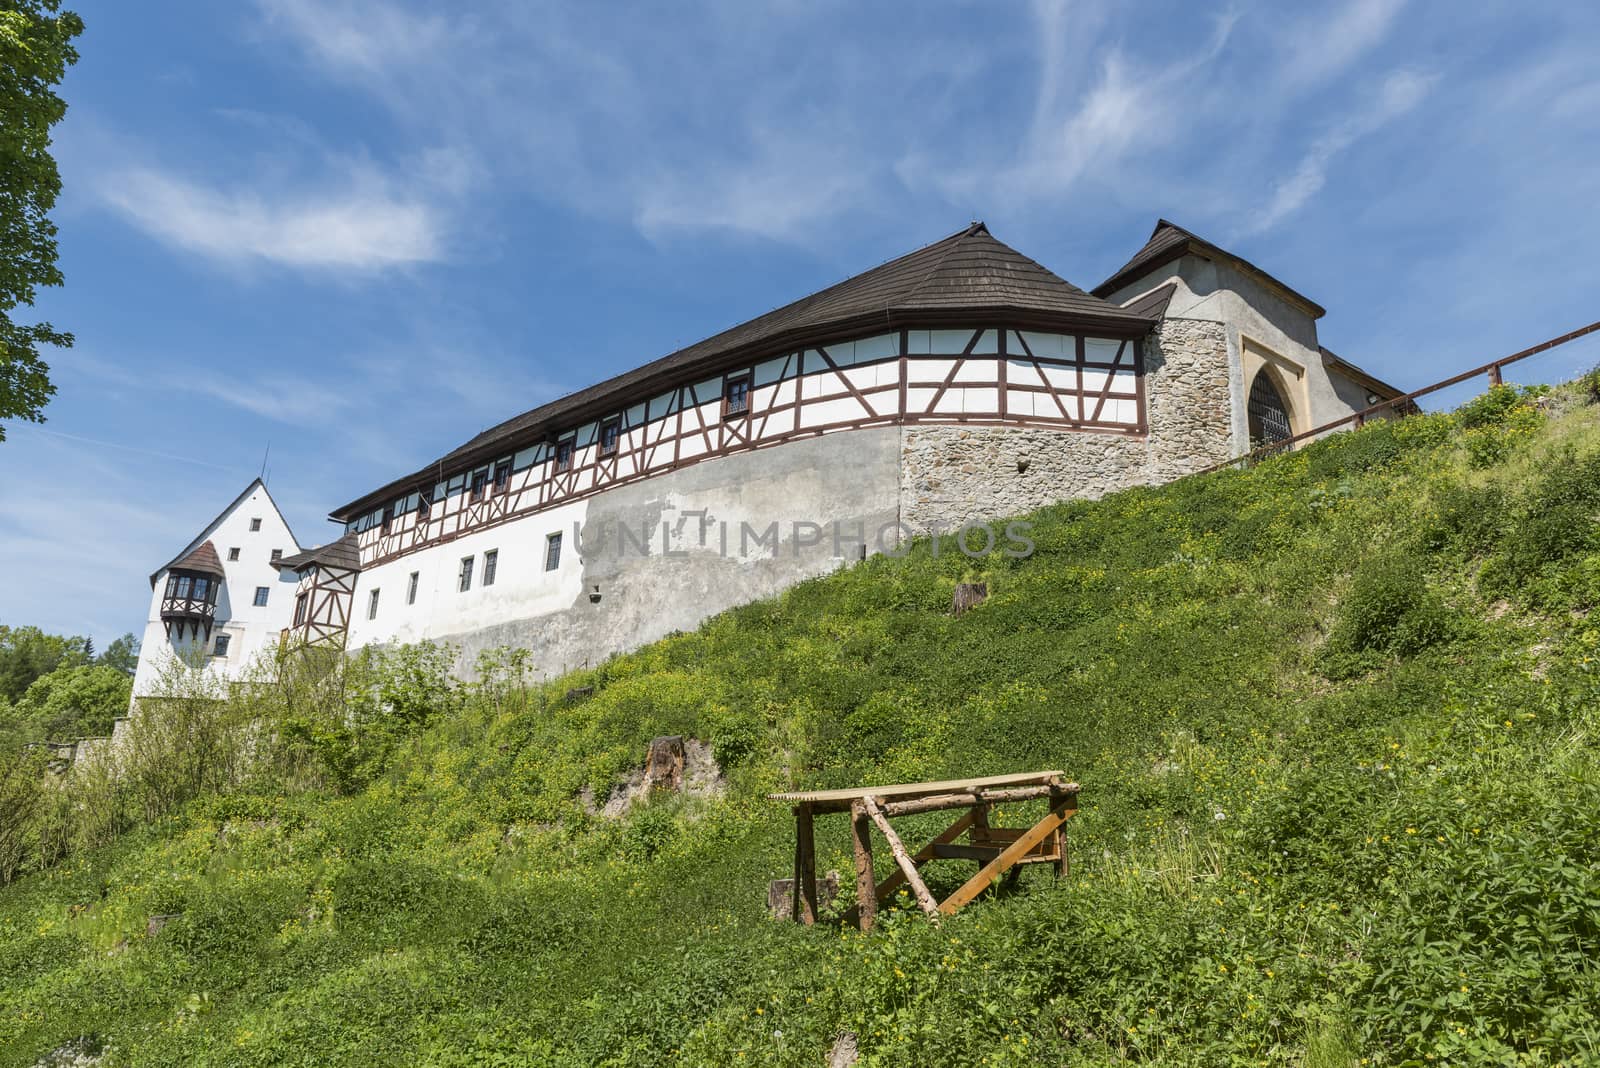 Seeberg castle near the city of Frantiskovy Lazne, Czech Republic